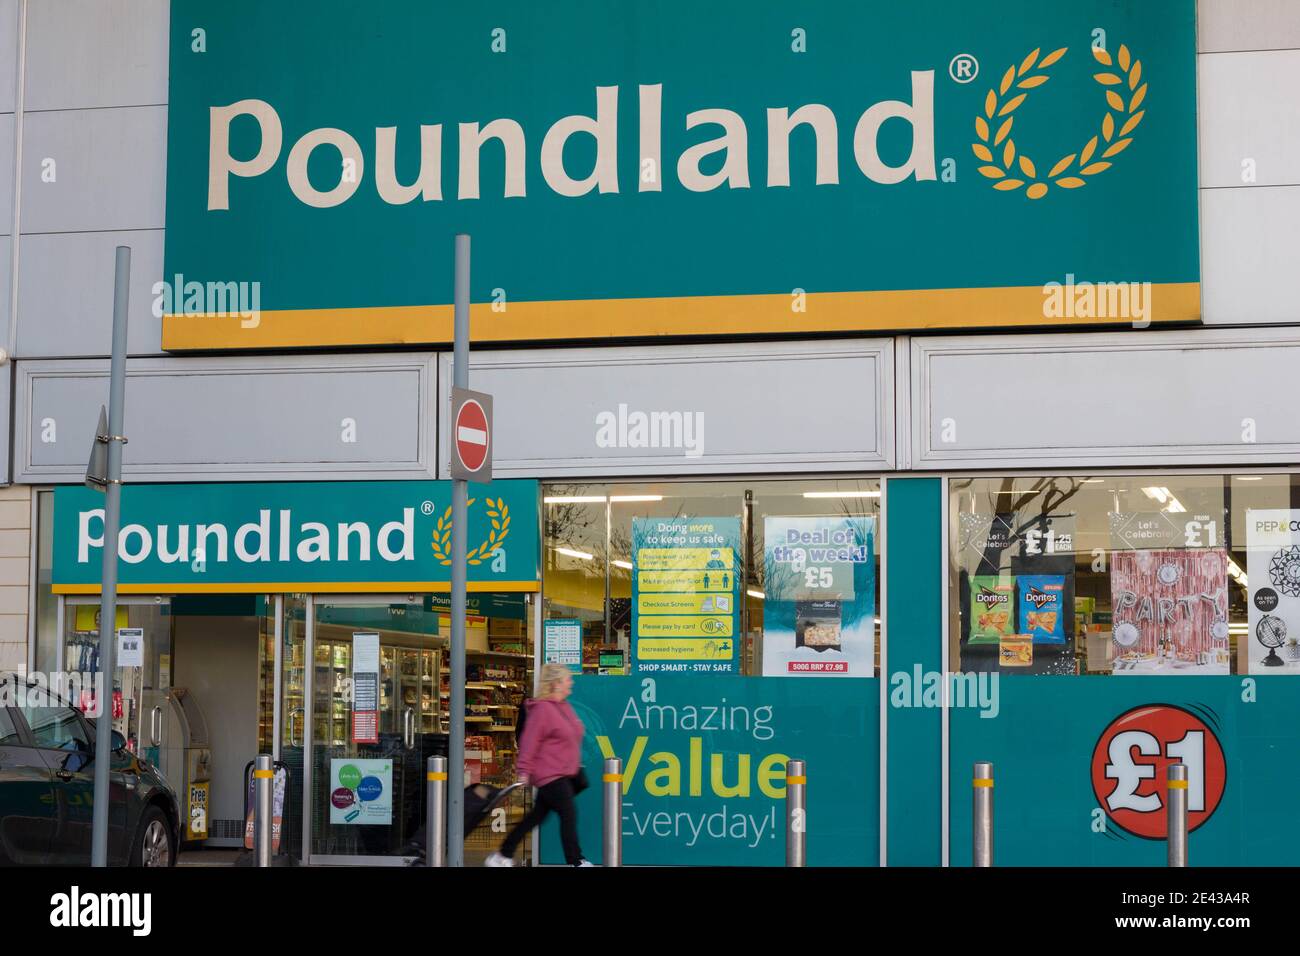 Poundland offering amazing value everyday Stock Photo